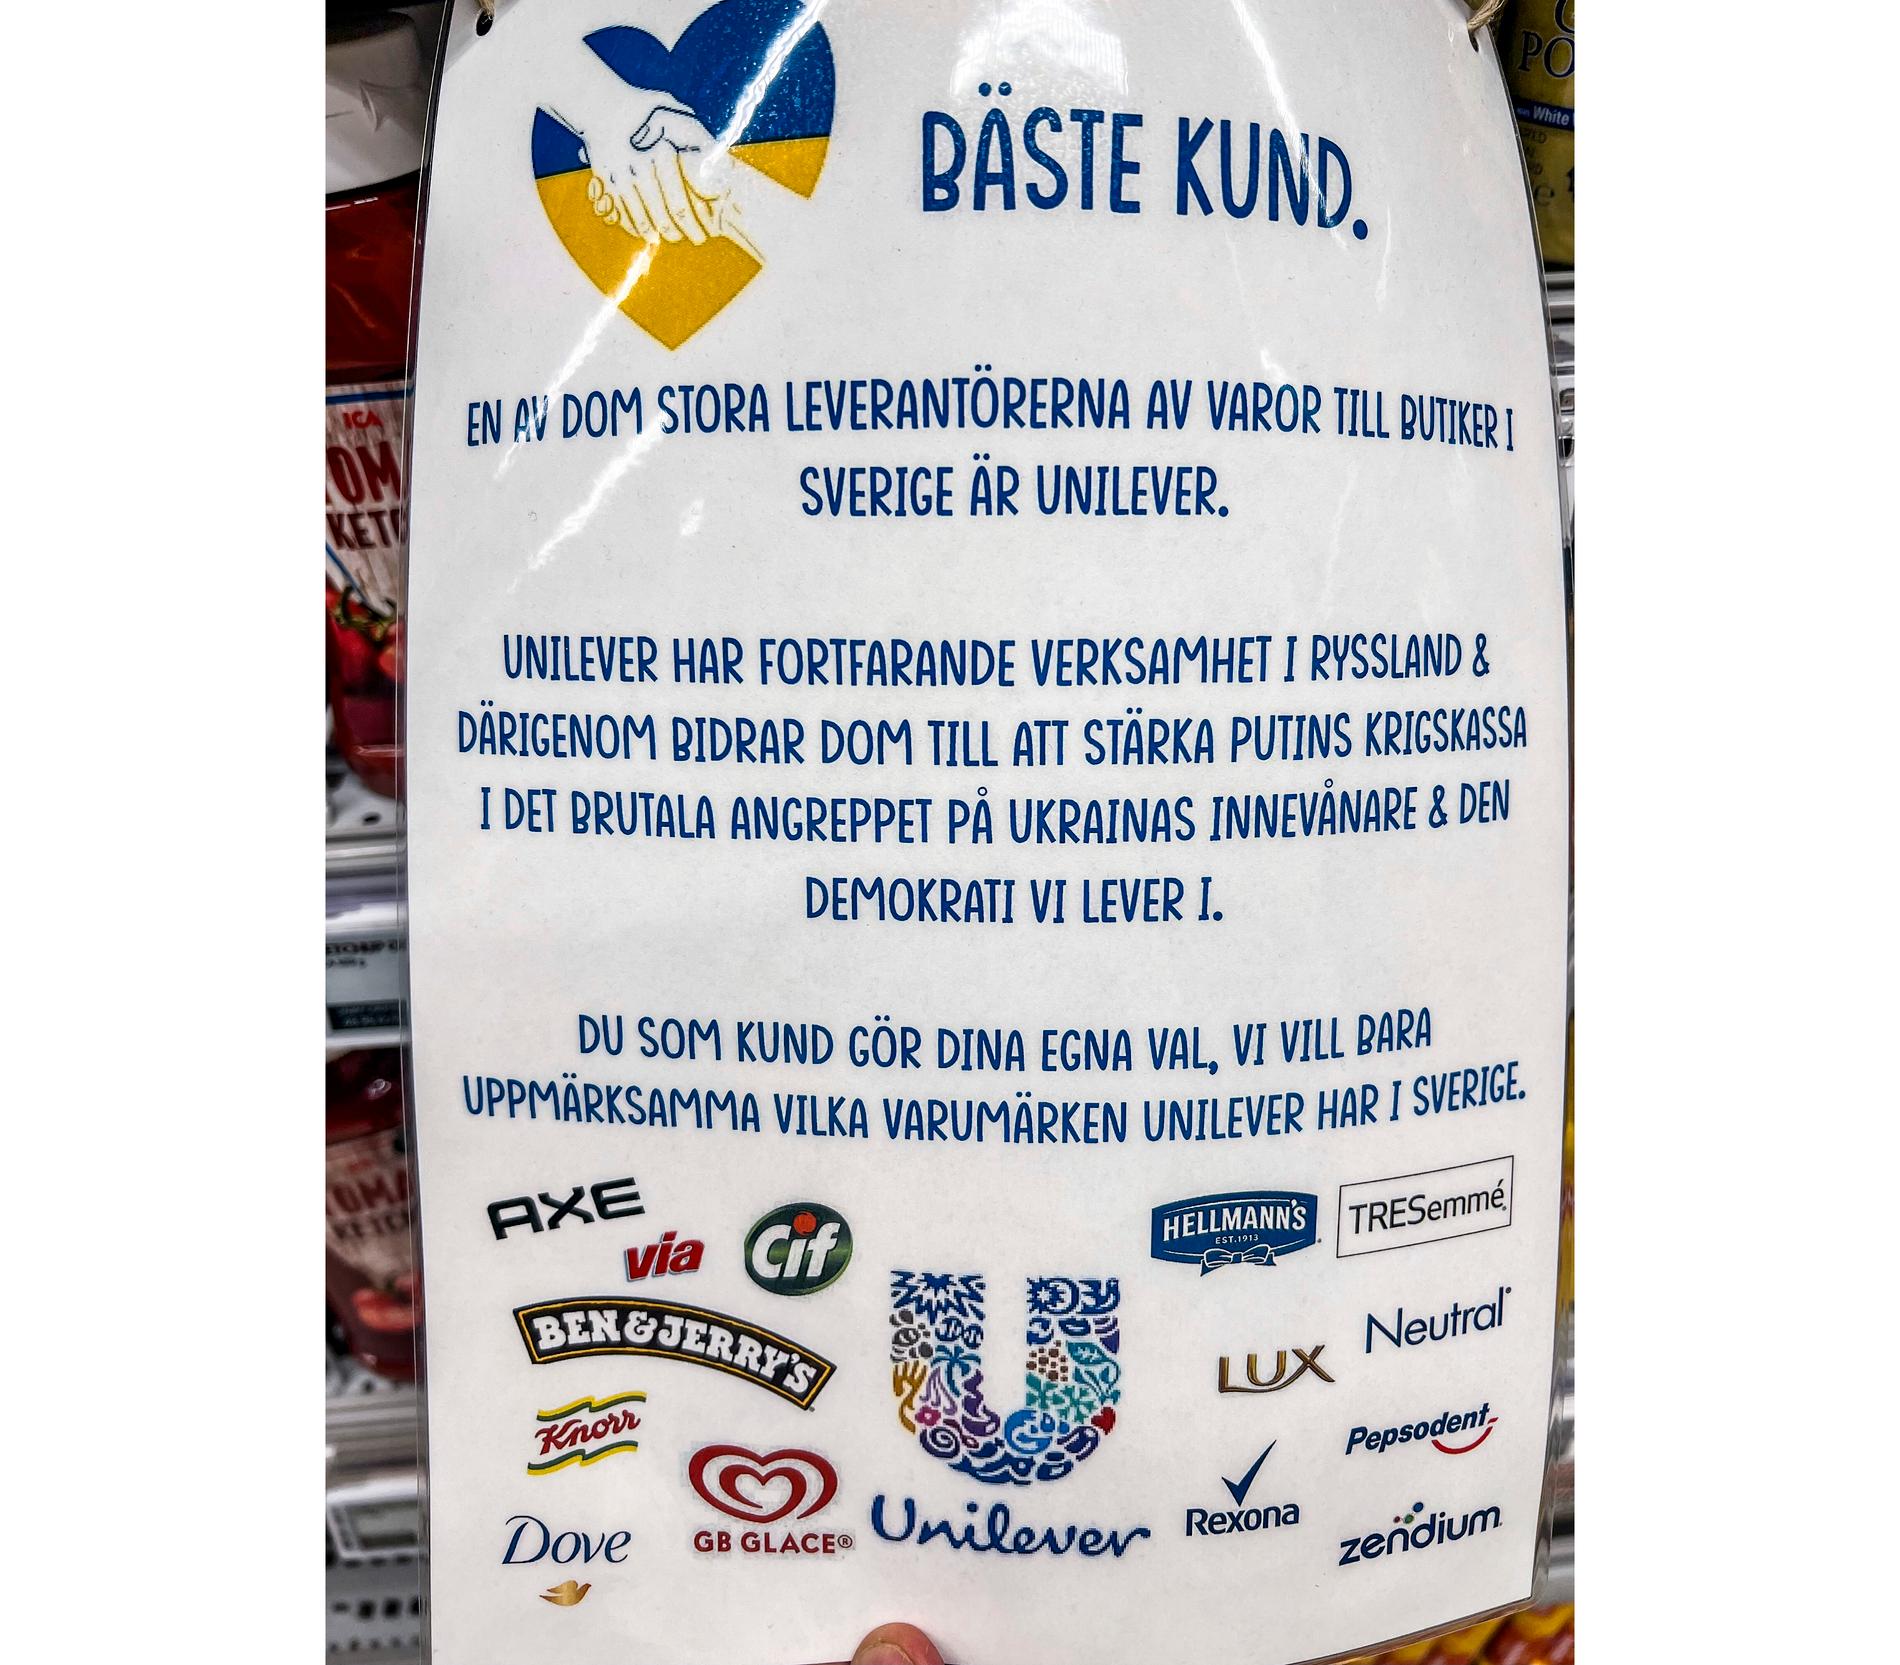 Mats Calla, Ica-handlare i Umeå, har valt att aktivt ta ställning mot varor i sin egen butik genom att sätta upp en varningsskylt för Unilevers varor. Mondelez varor sålde han snabbt av redan i våras och lät intäkterna gå till hjälp i Ukraina.